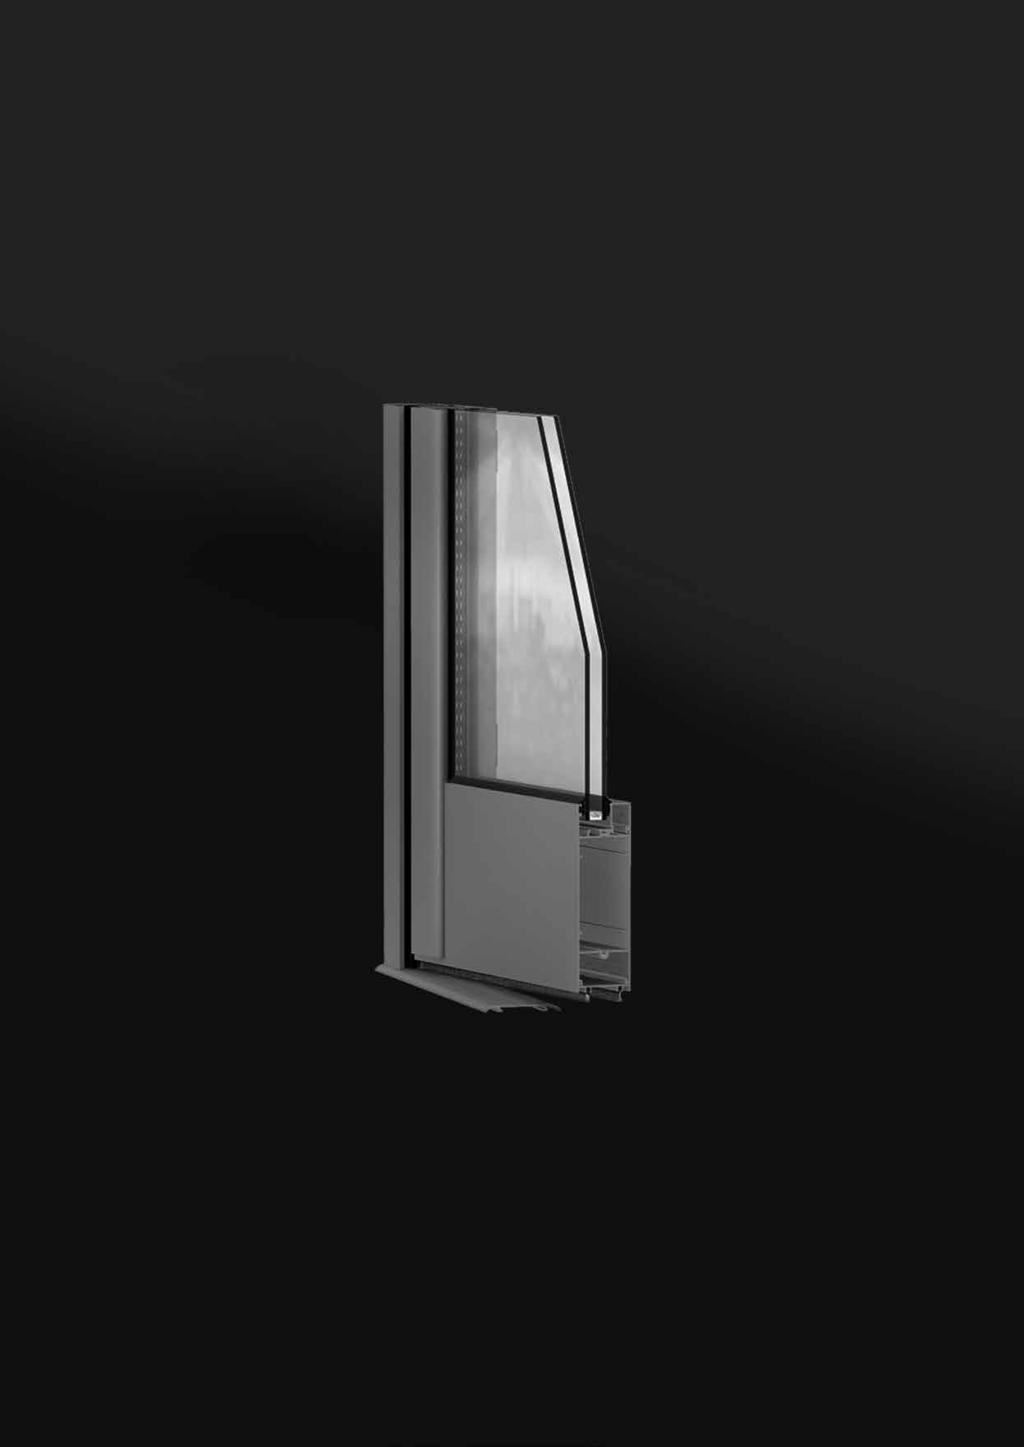 UNNO, la puerta reforzada Características Manteniendo el mismo módulo constructivo de 50 mm que la ventana practicable, la puerta de la gama UNNO ha sido especialmente concebida para un uso intensivo.